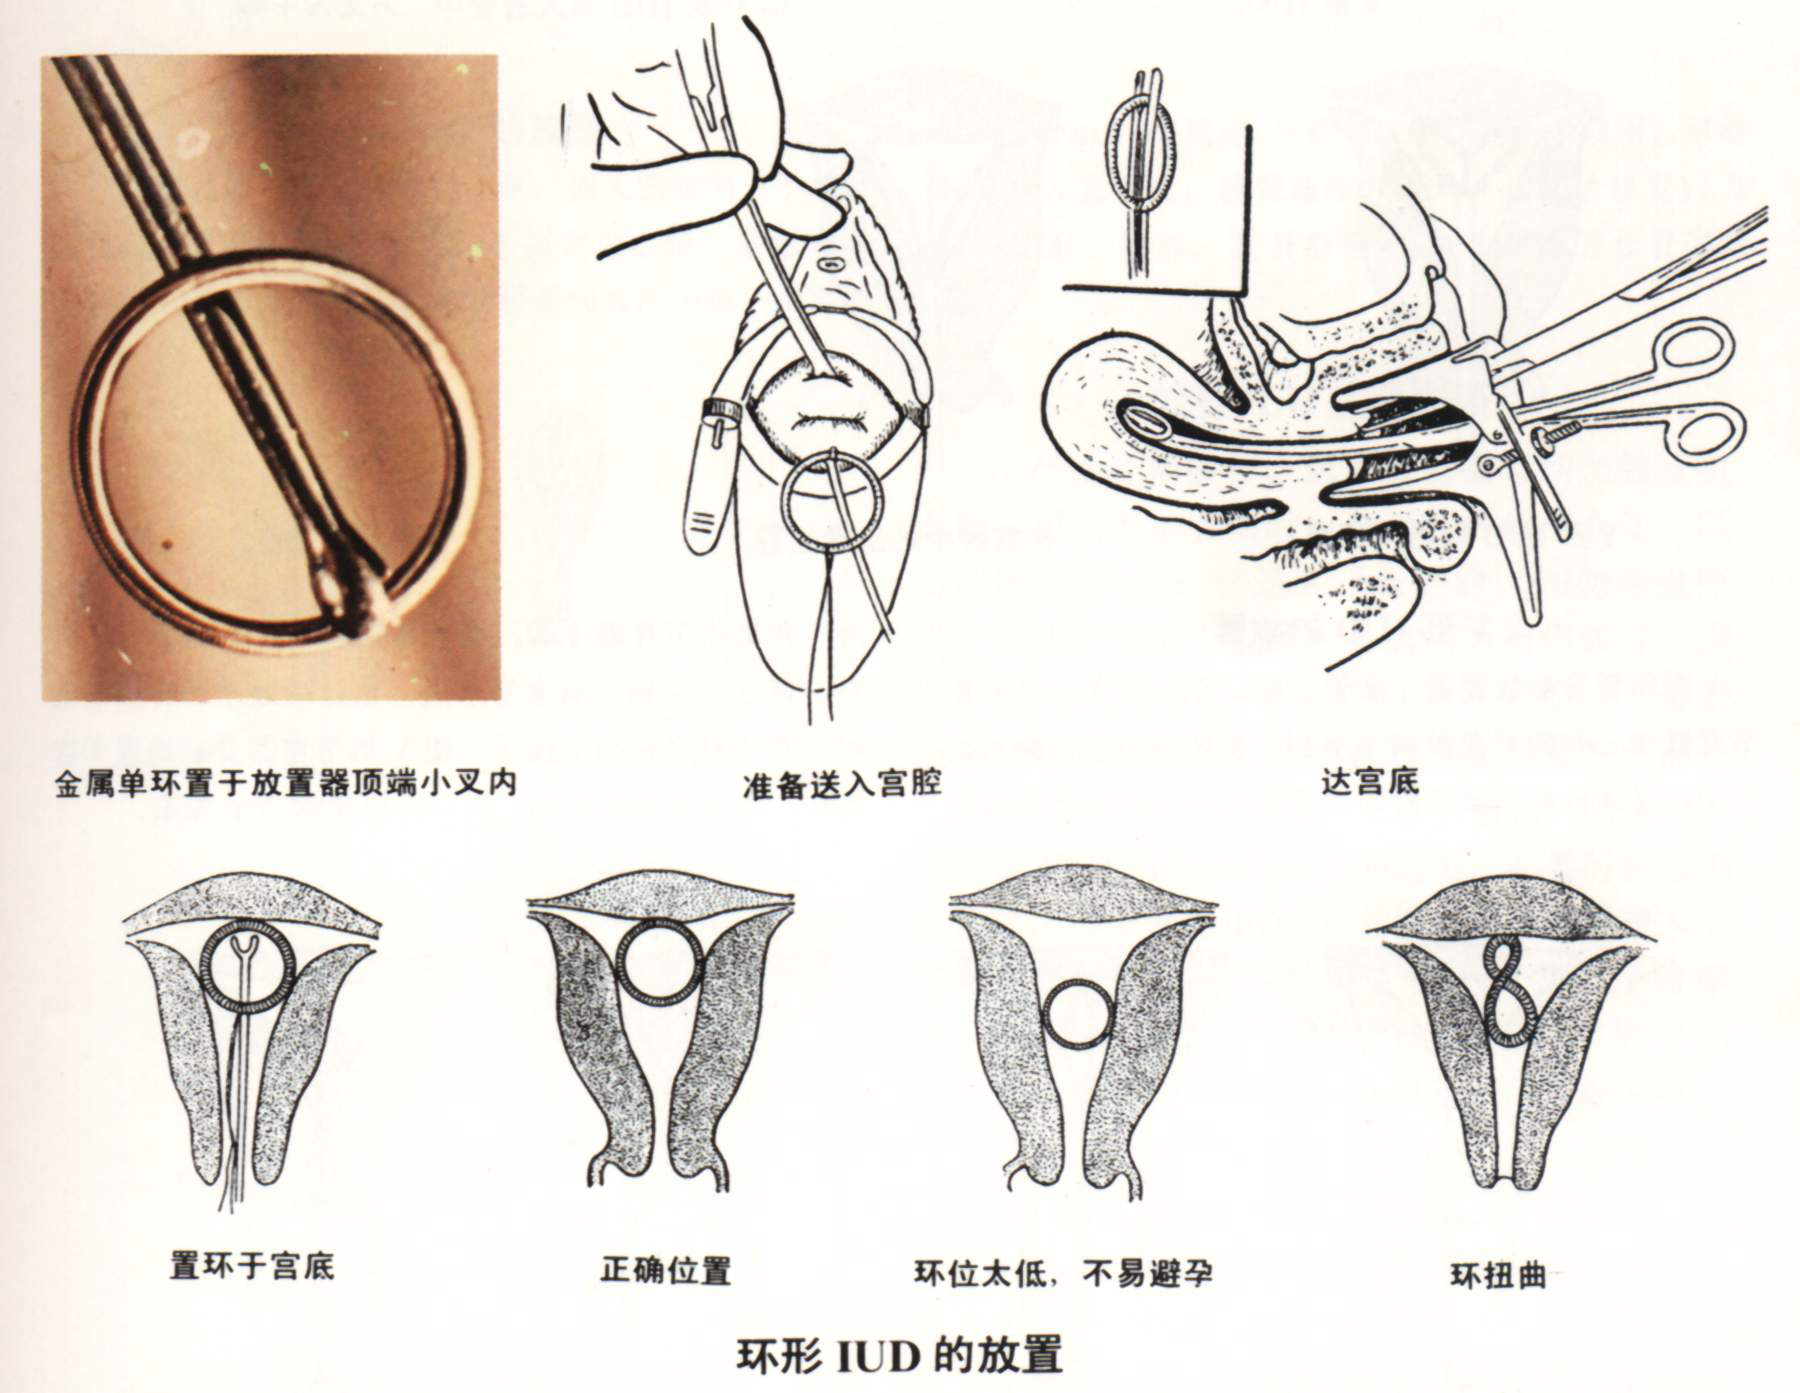 ③沿宫腔方向将叉偏水平位通过宫颈管后转正,将环送达宫底;④然后将